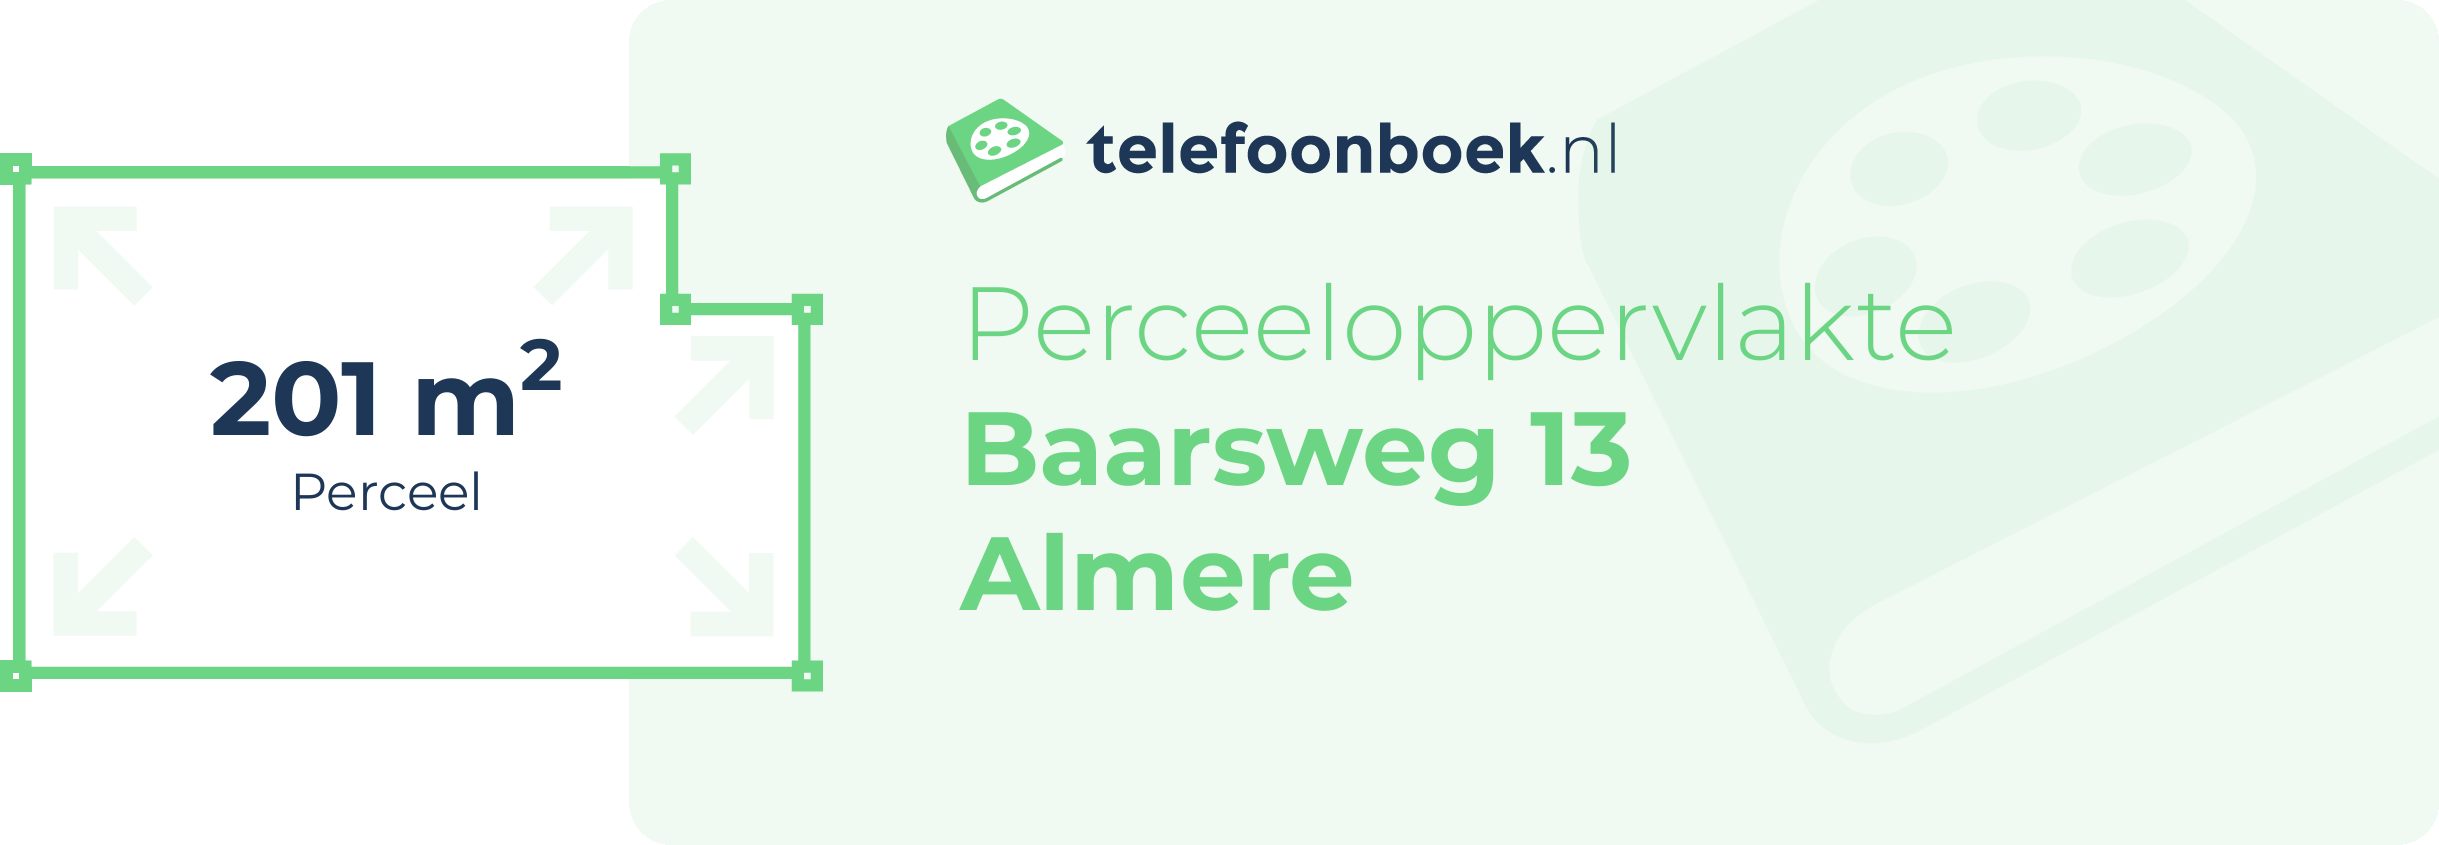 Perceeloppervlakte Baarsweg 13 Almere